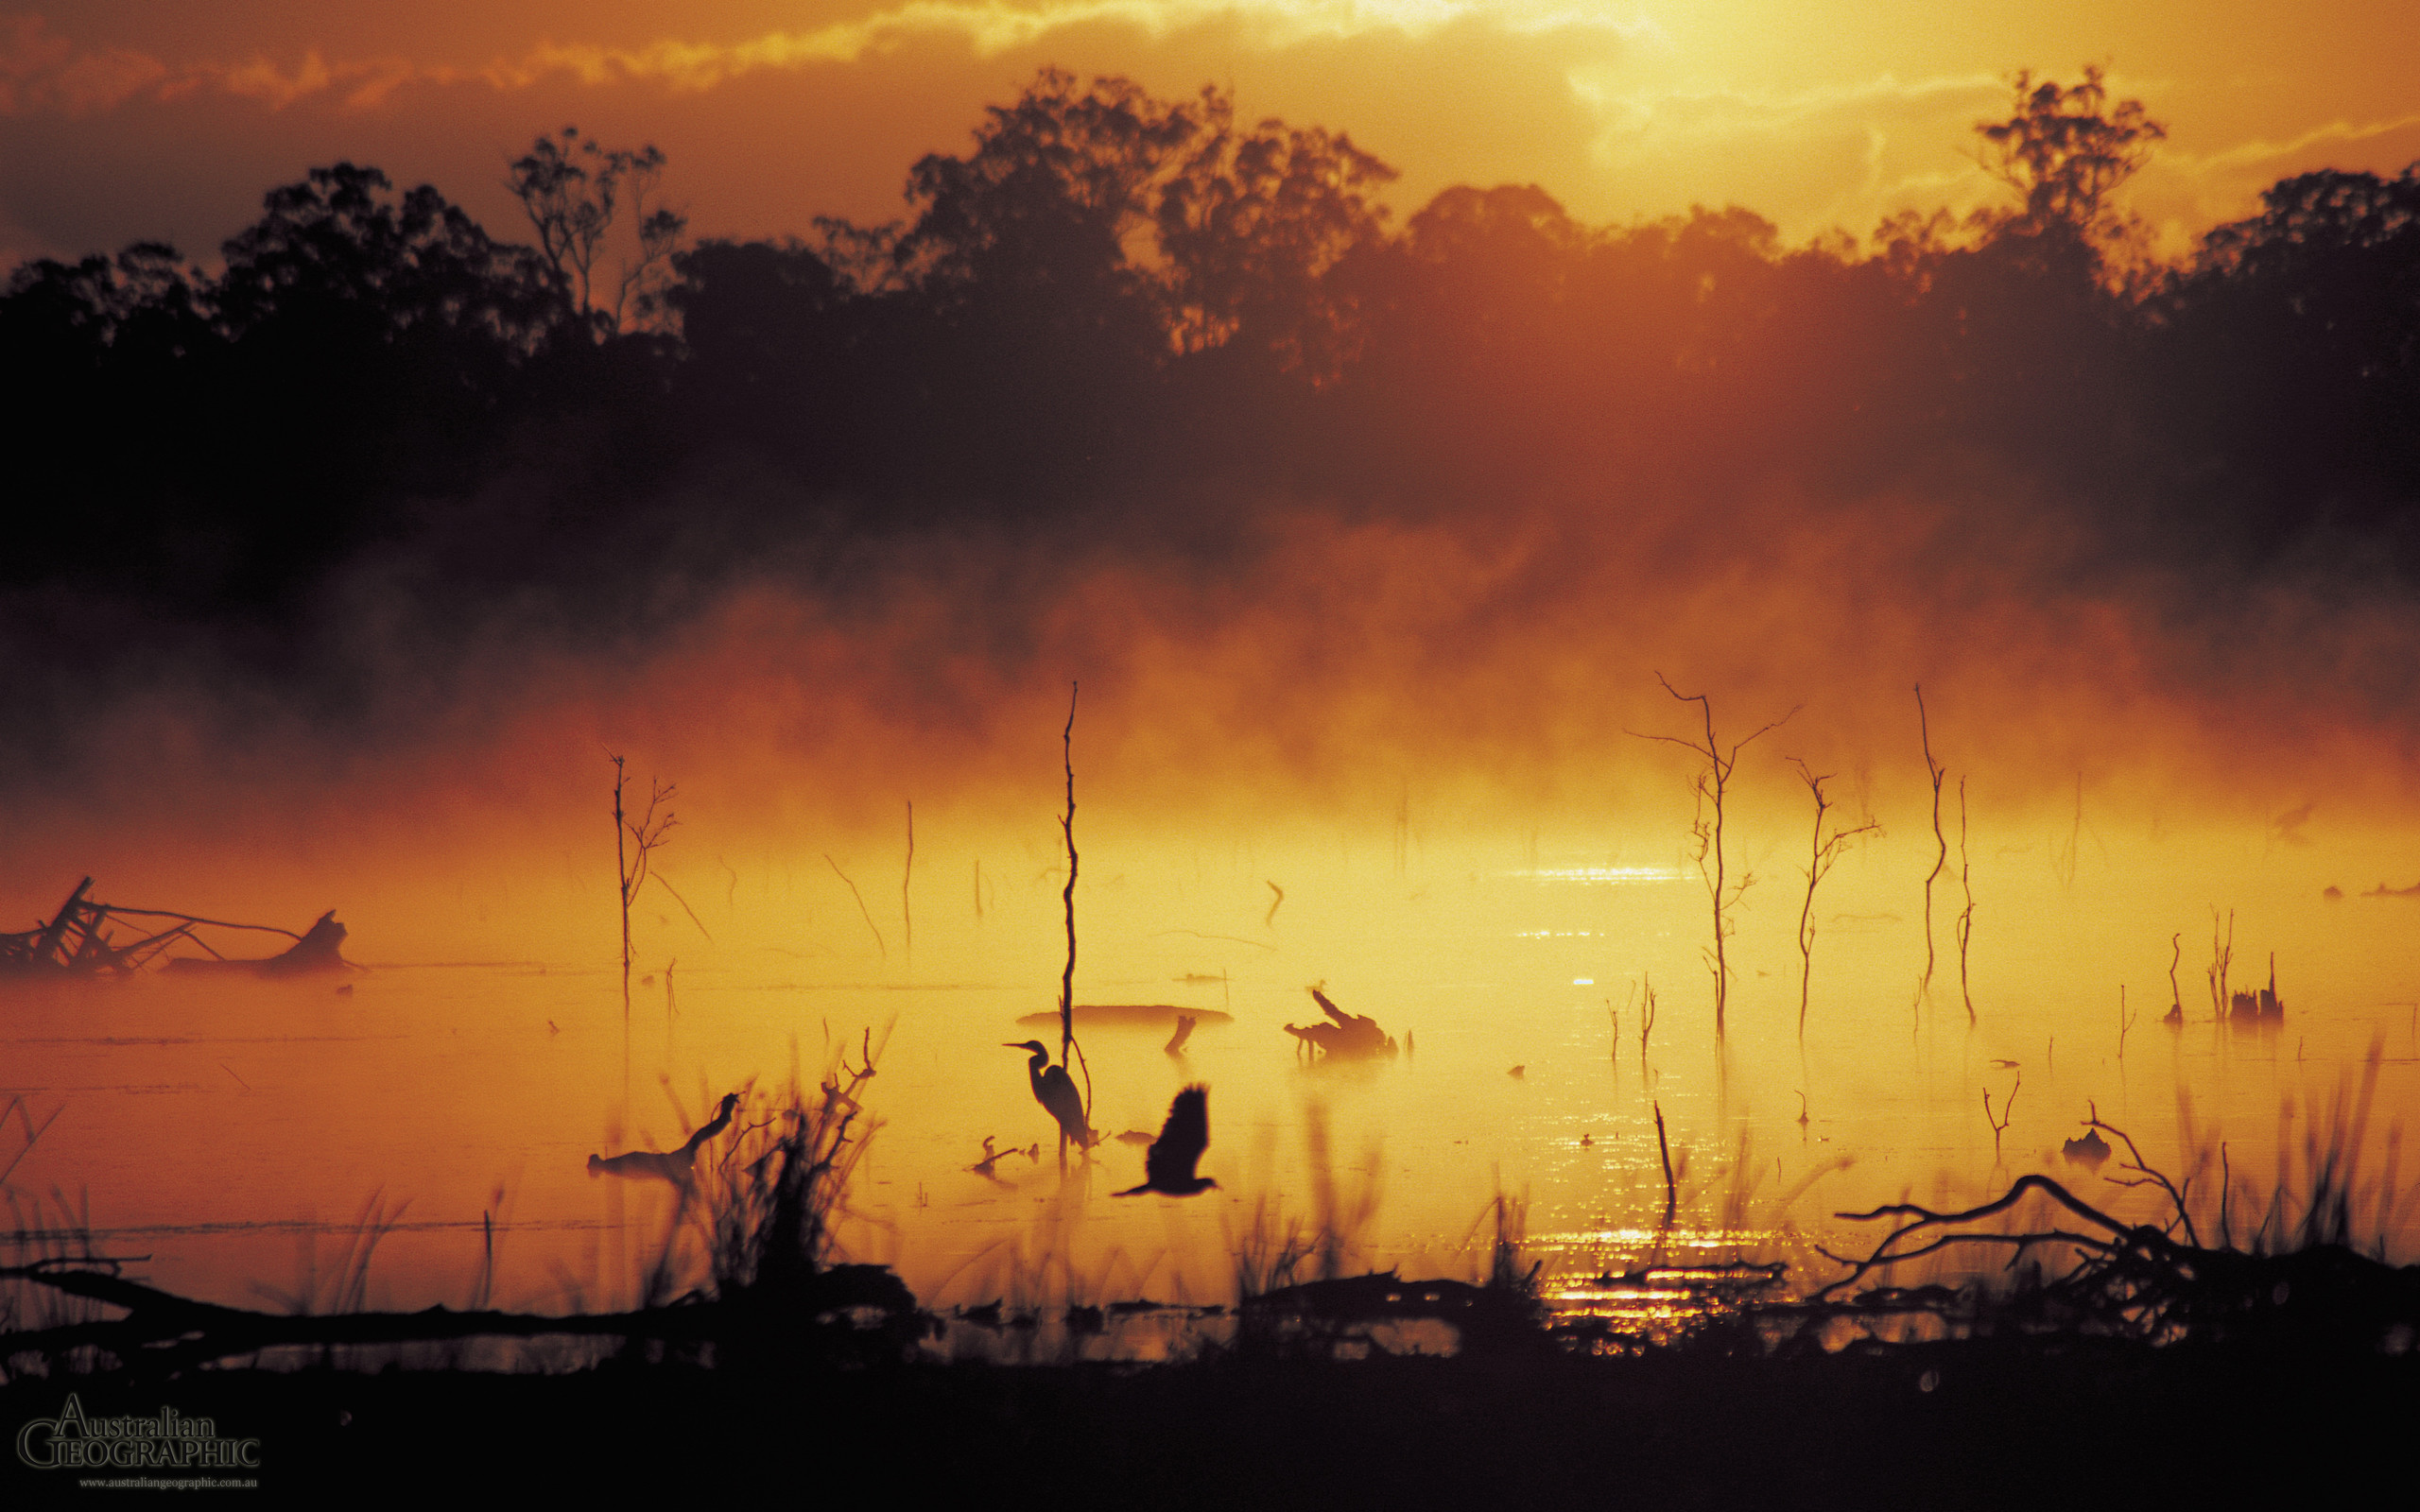 2560x1600 Wallpapers. Images of Australia: Wetlands, Mareeba, Queensland